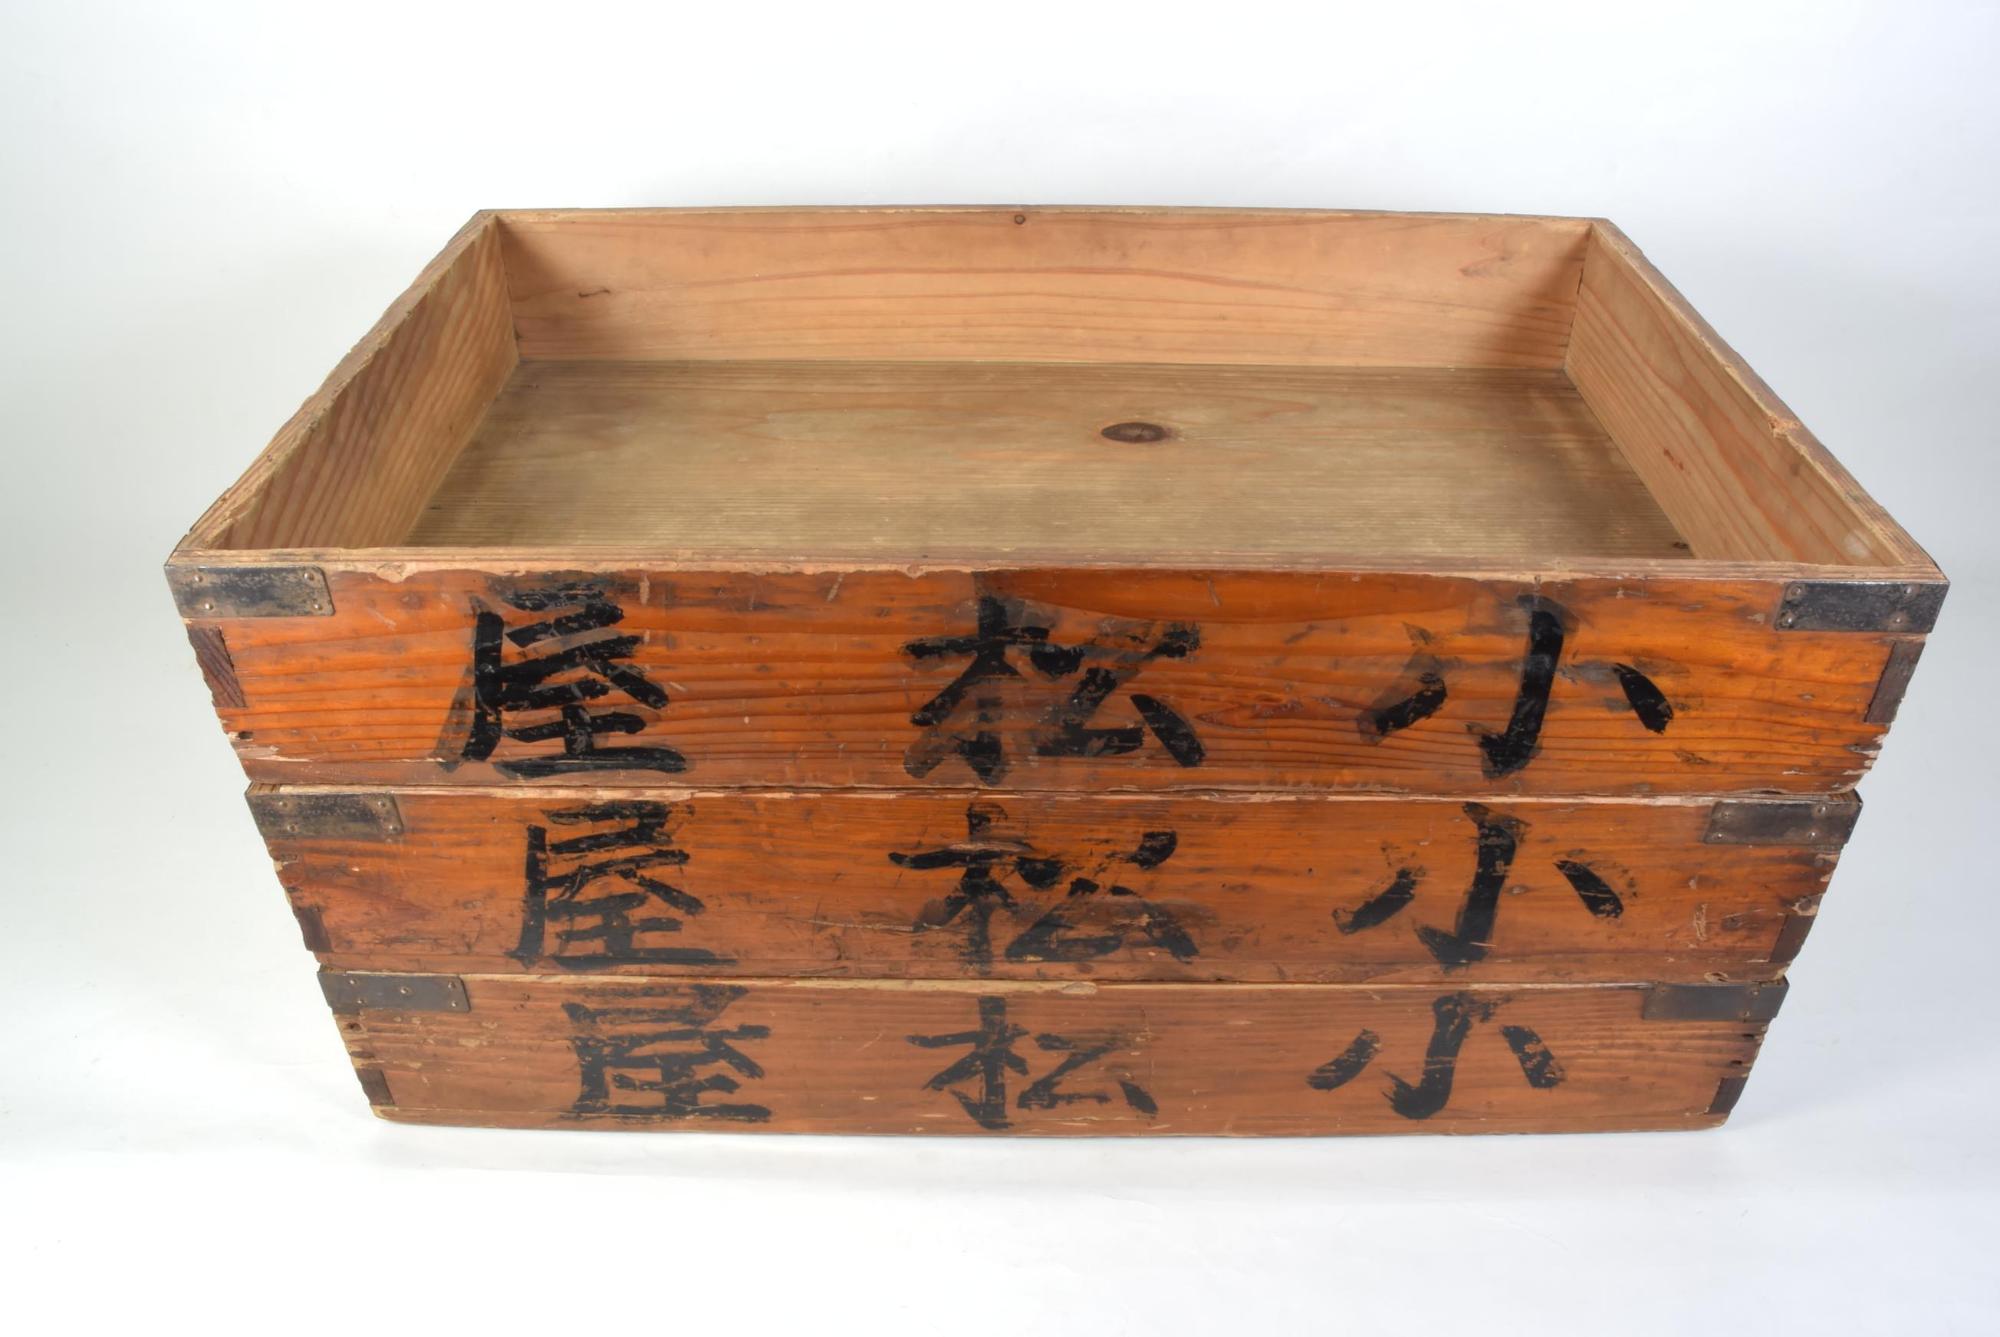 木箱の側面に「小松屋」の文字が書かれており長方形の木箱が3段積み重ねられ、蓋が外されている写真